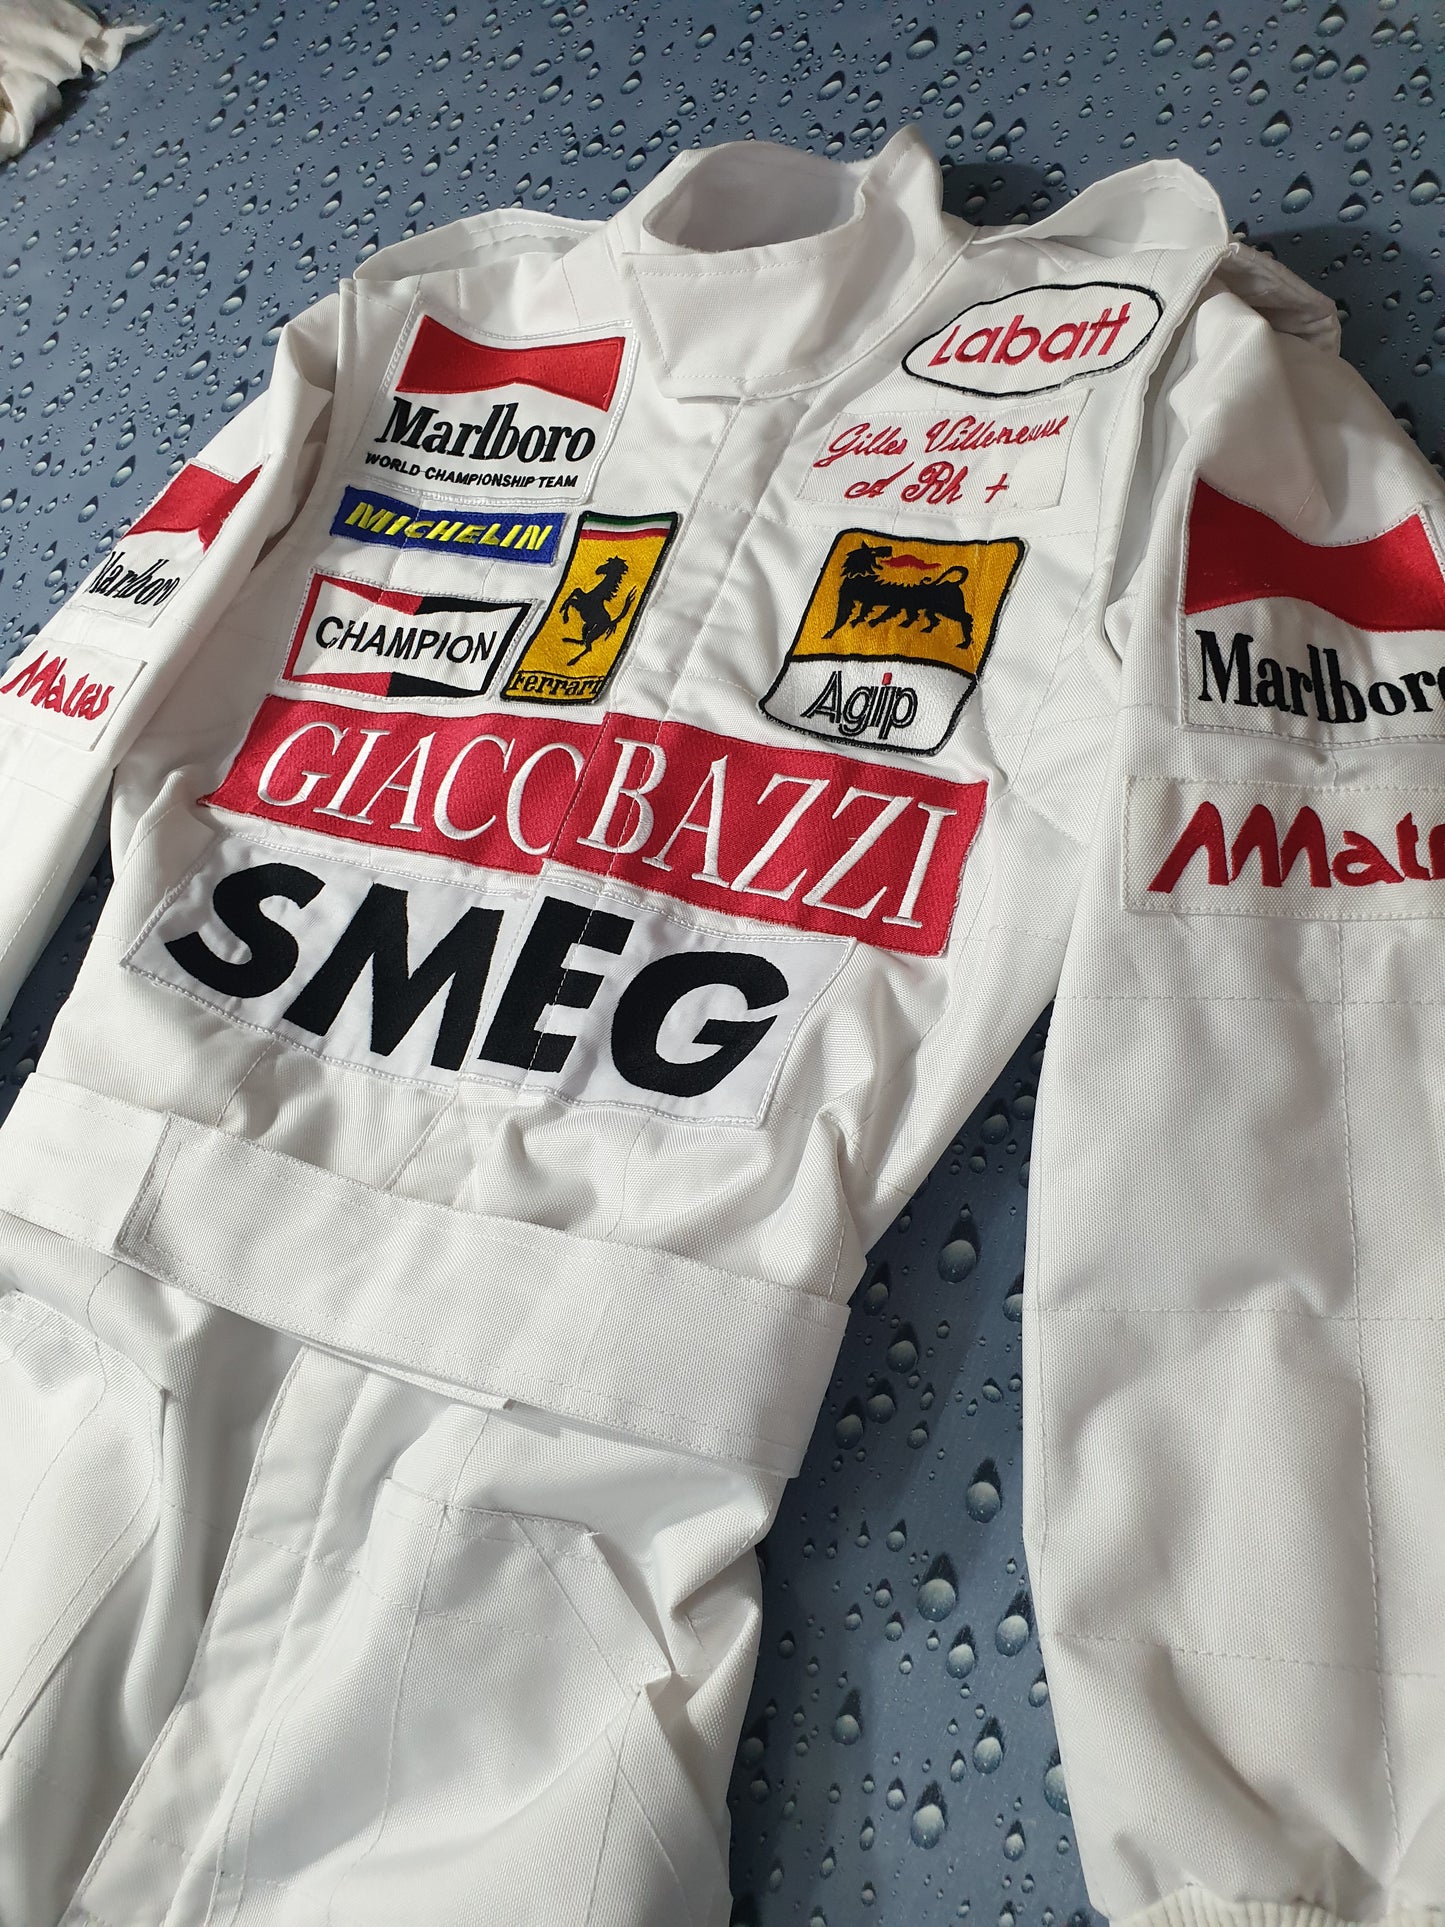 Gilles Villeneuve 1970 Smeg Embroidered Replica Race Suit